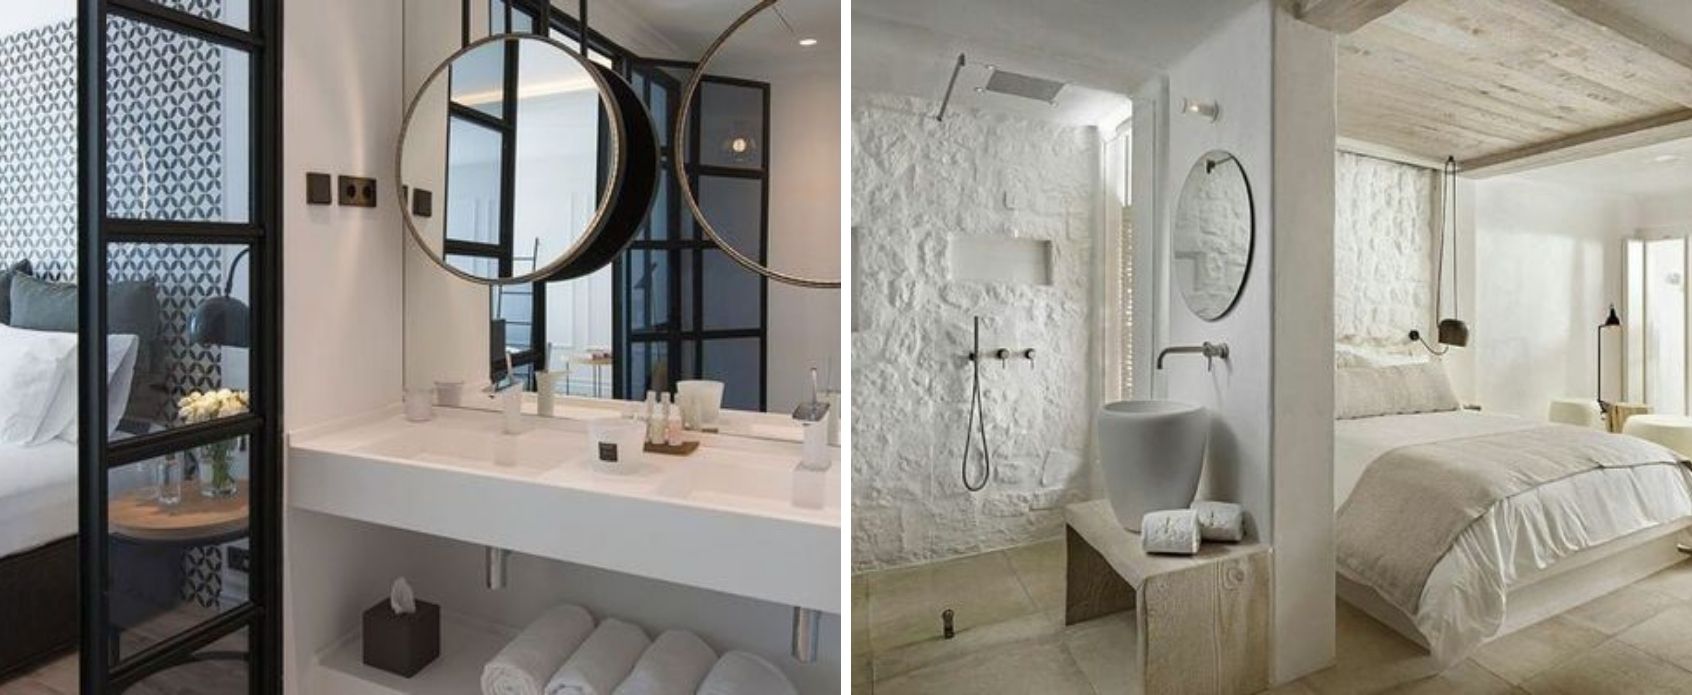 consejos_baño_integrado_dormitorio_diseño_interiorismo_decoración_trucos-07